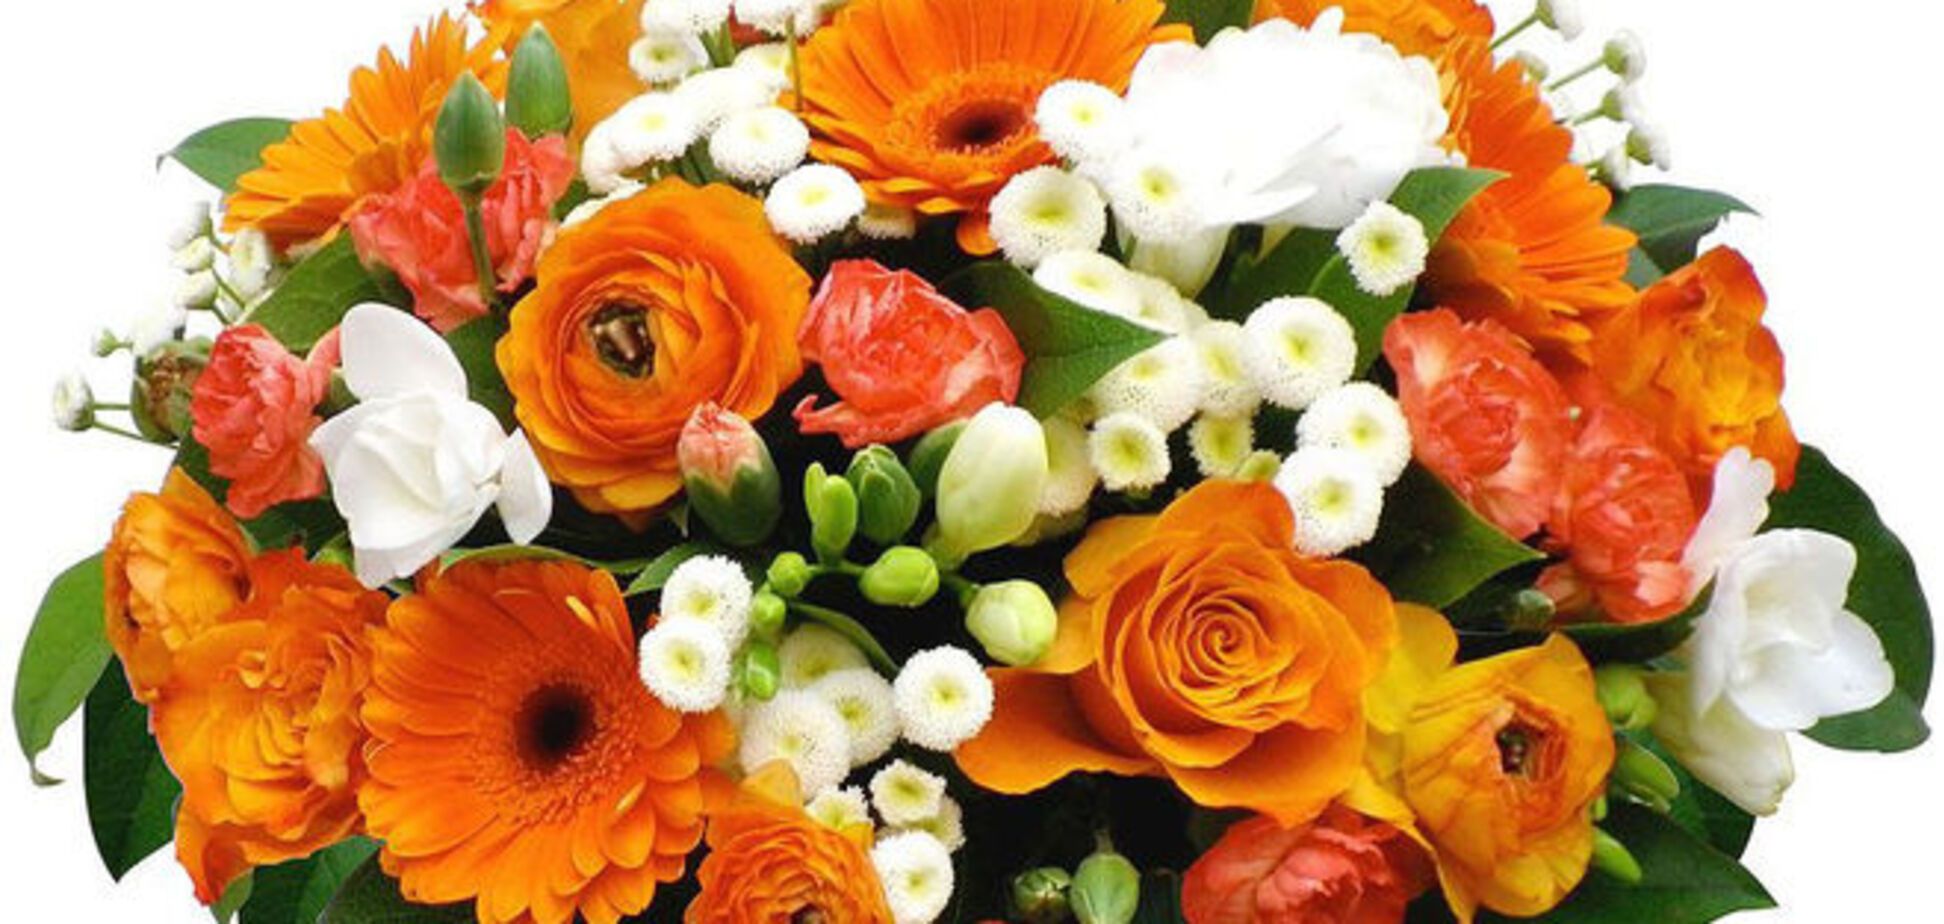 Как выбрать и купить цветы в онлайн режиме?